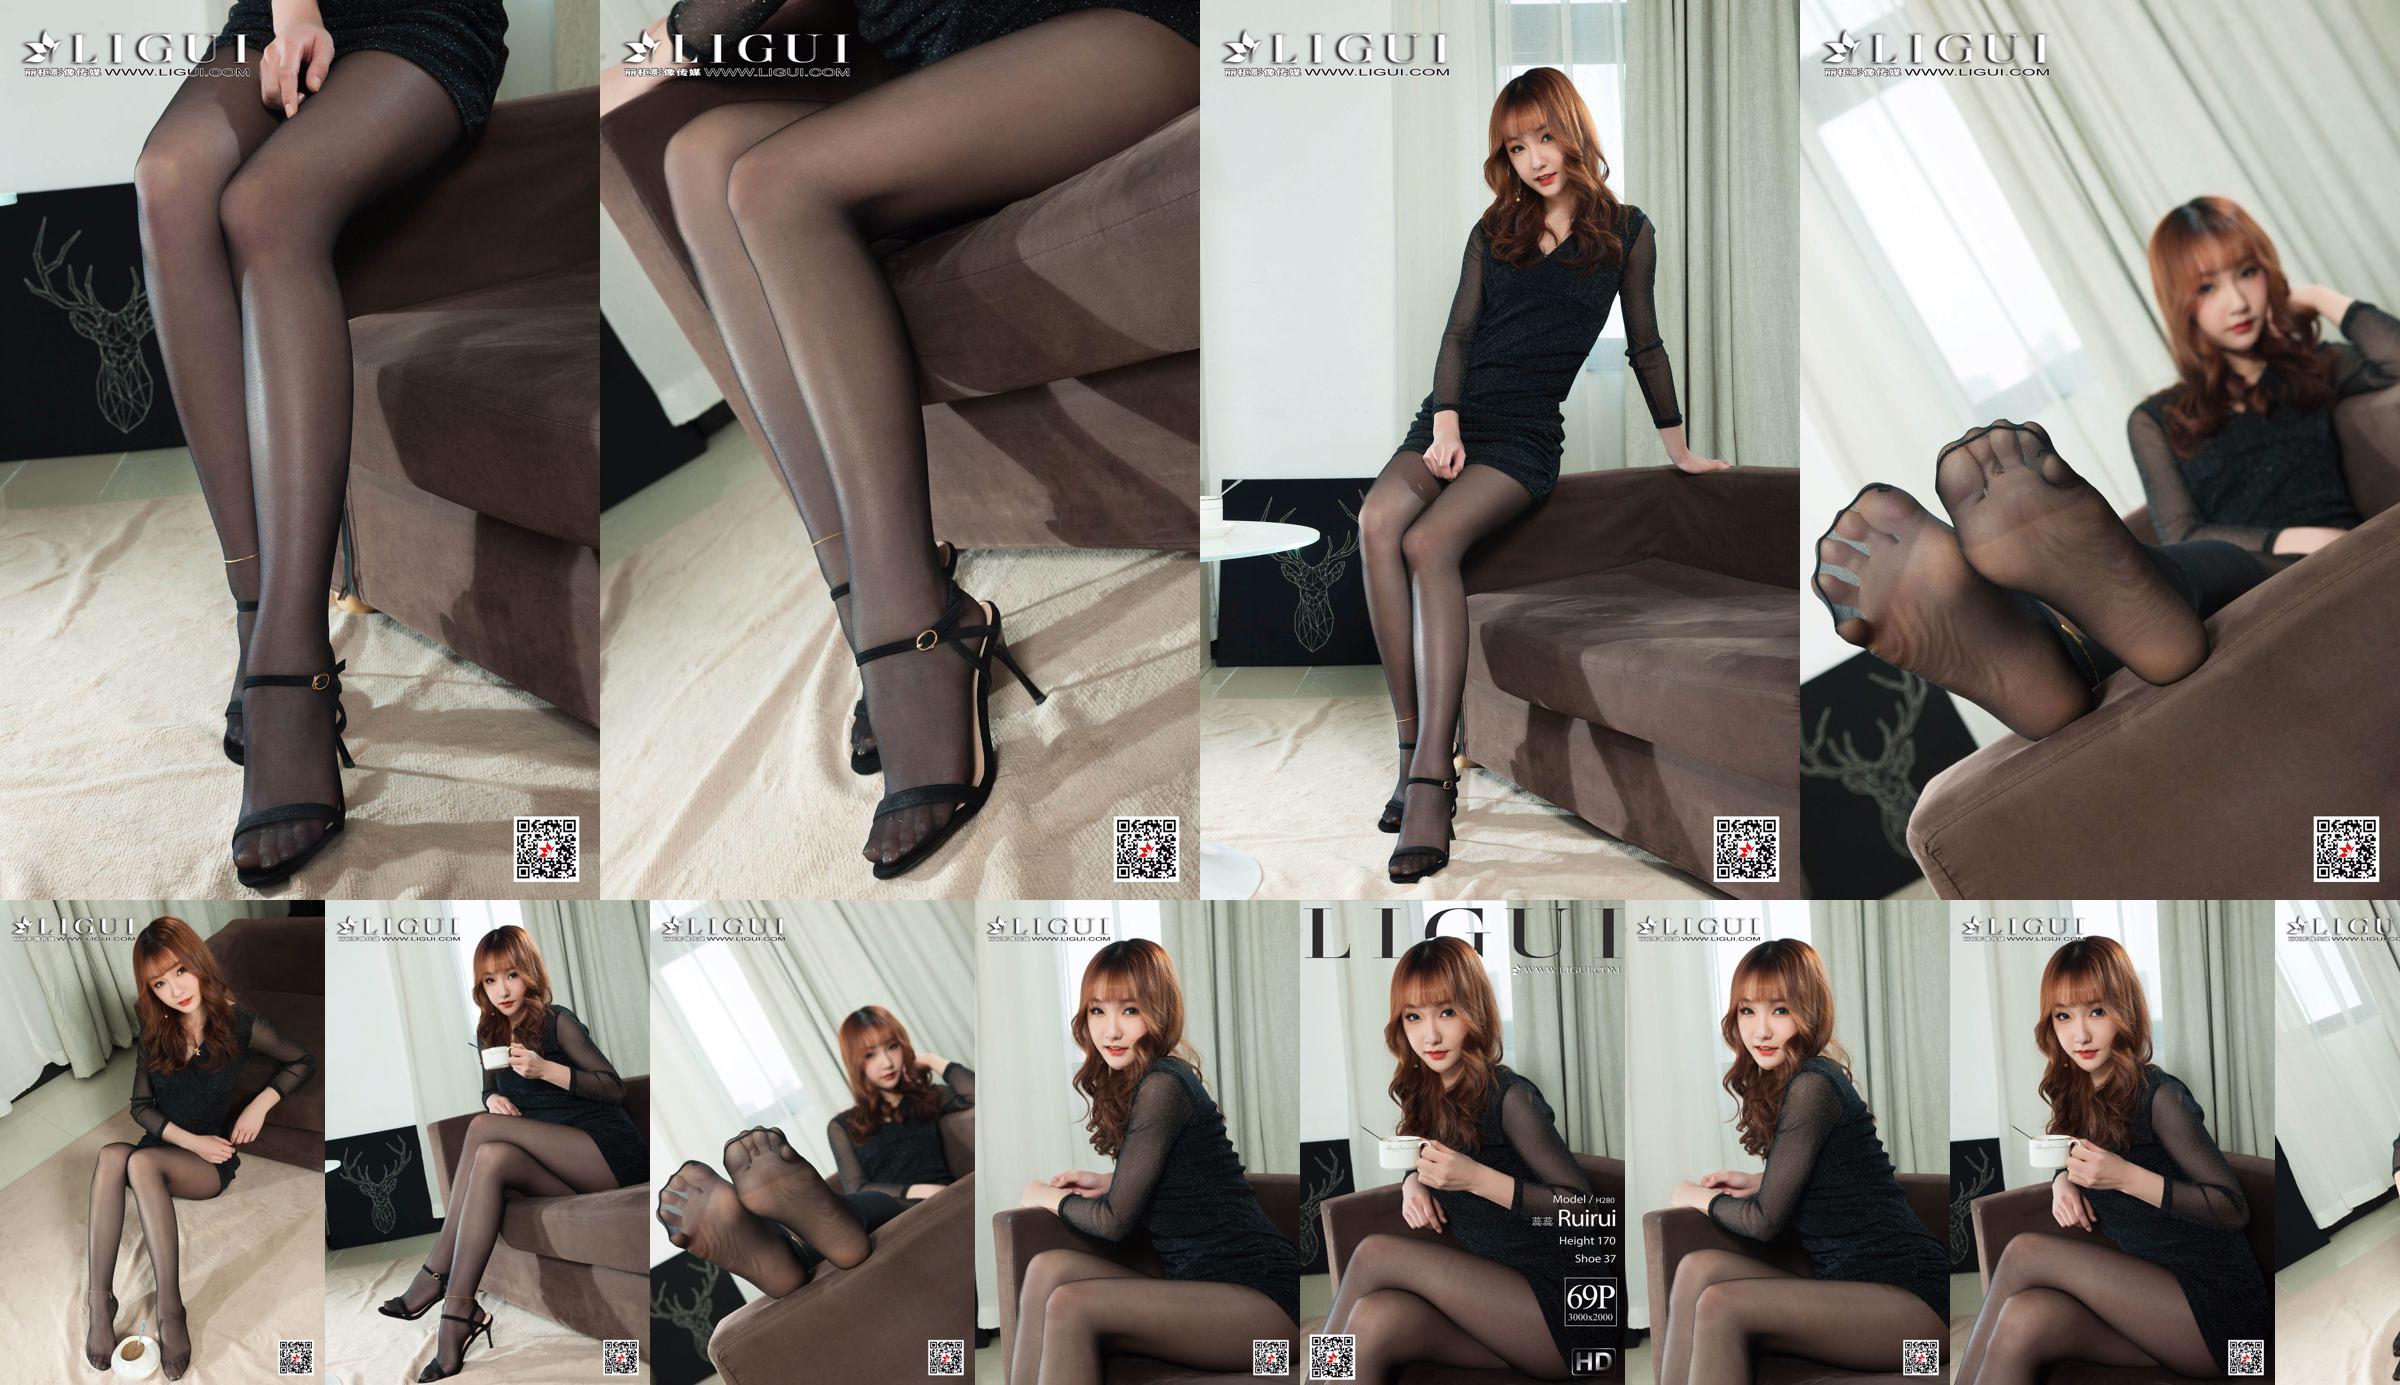 Người mẫu Ruirui "Đôi chân đẹp và đôi chân ngọc bích trong vớ đen" [Ligui Ligui] No.01fc50 Trang 3